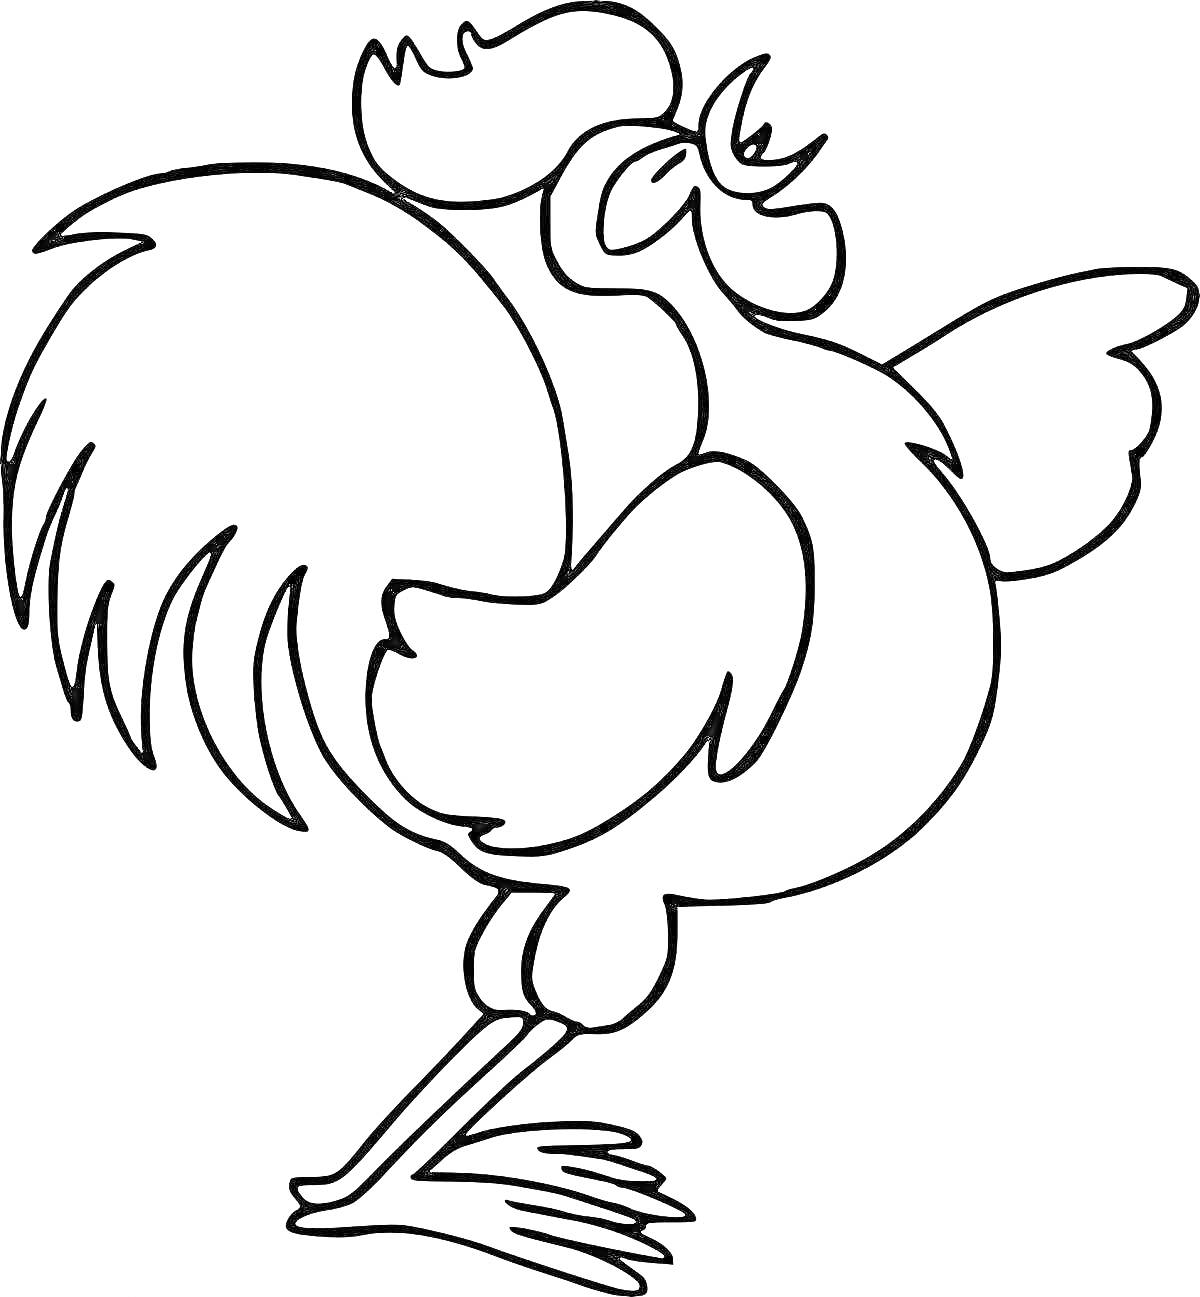 Раскраска Раскраска - Петух с расправленными крыльями, стоящий на одной ноге и поющий